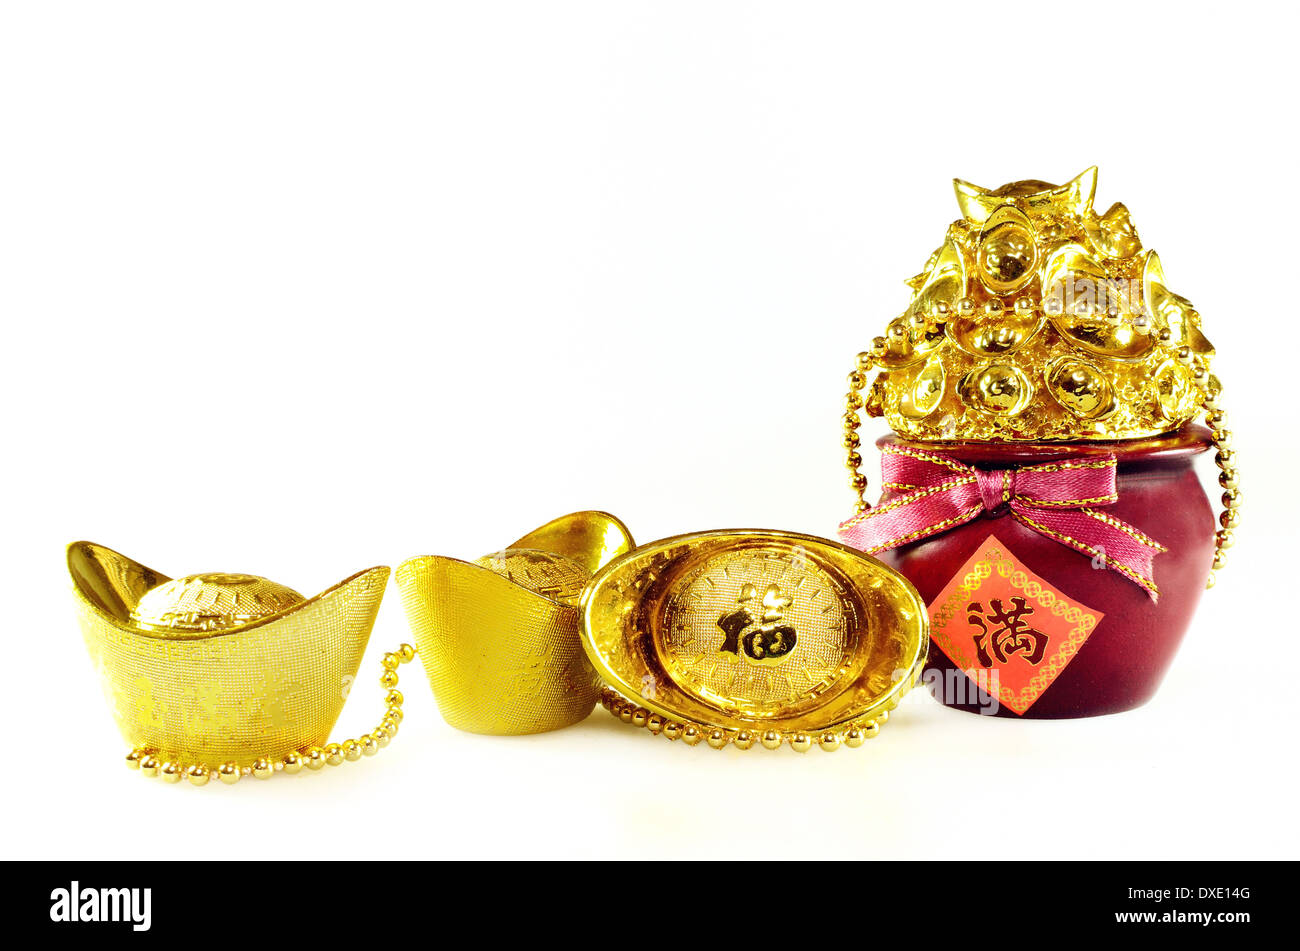 Chinese gold ingots decoration Stock Photo